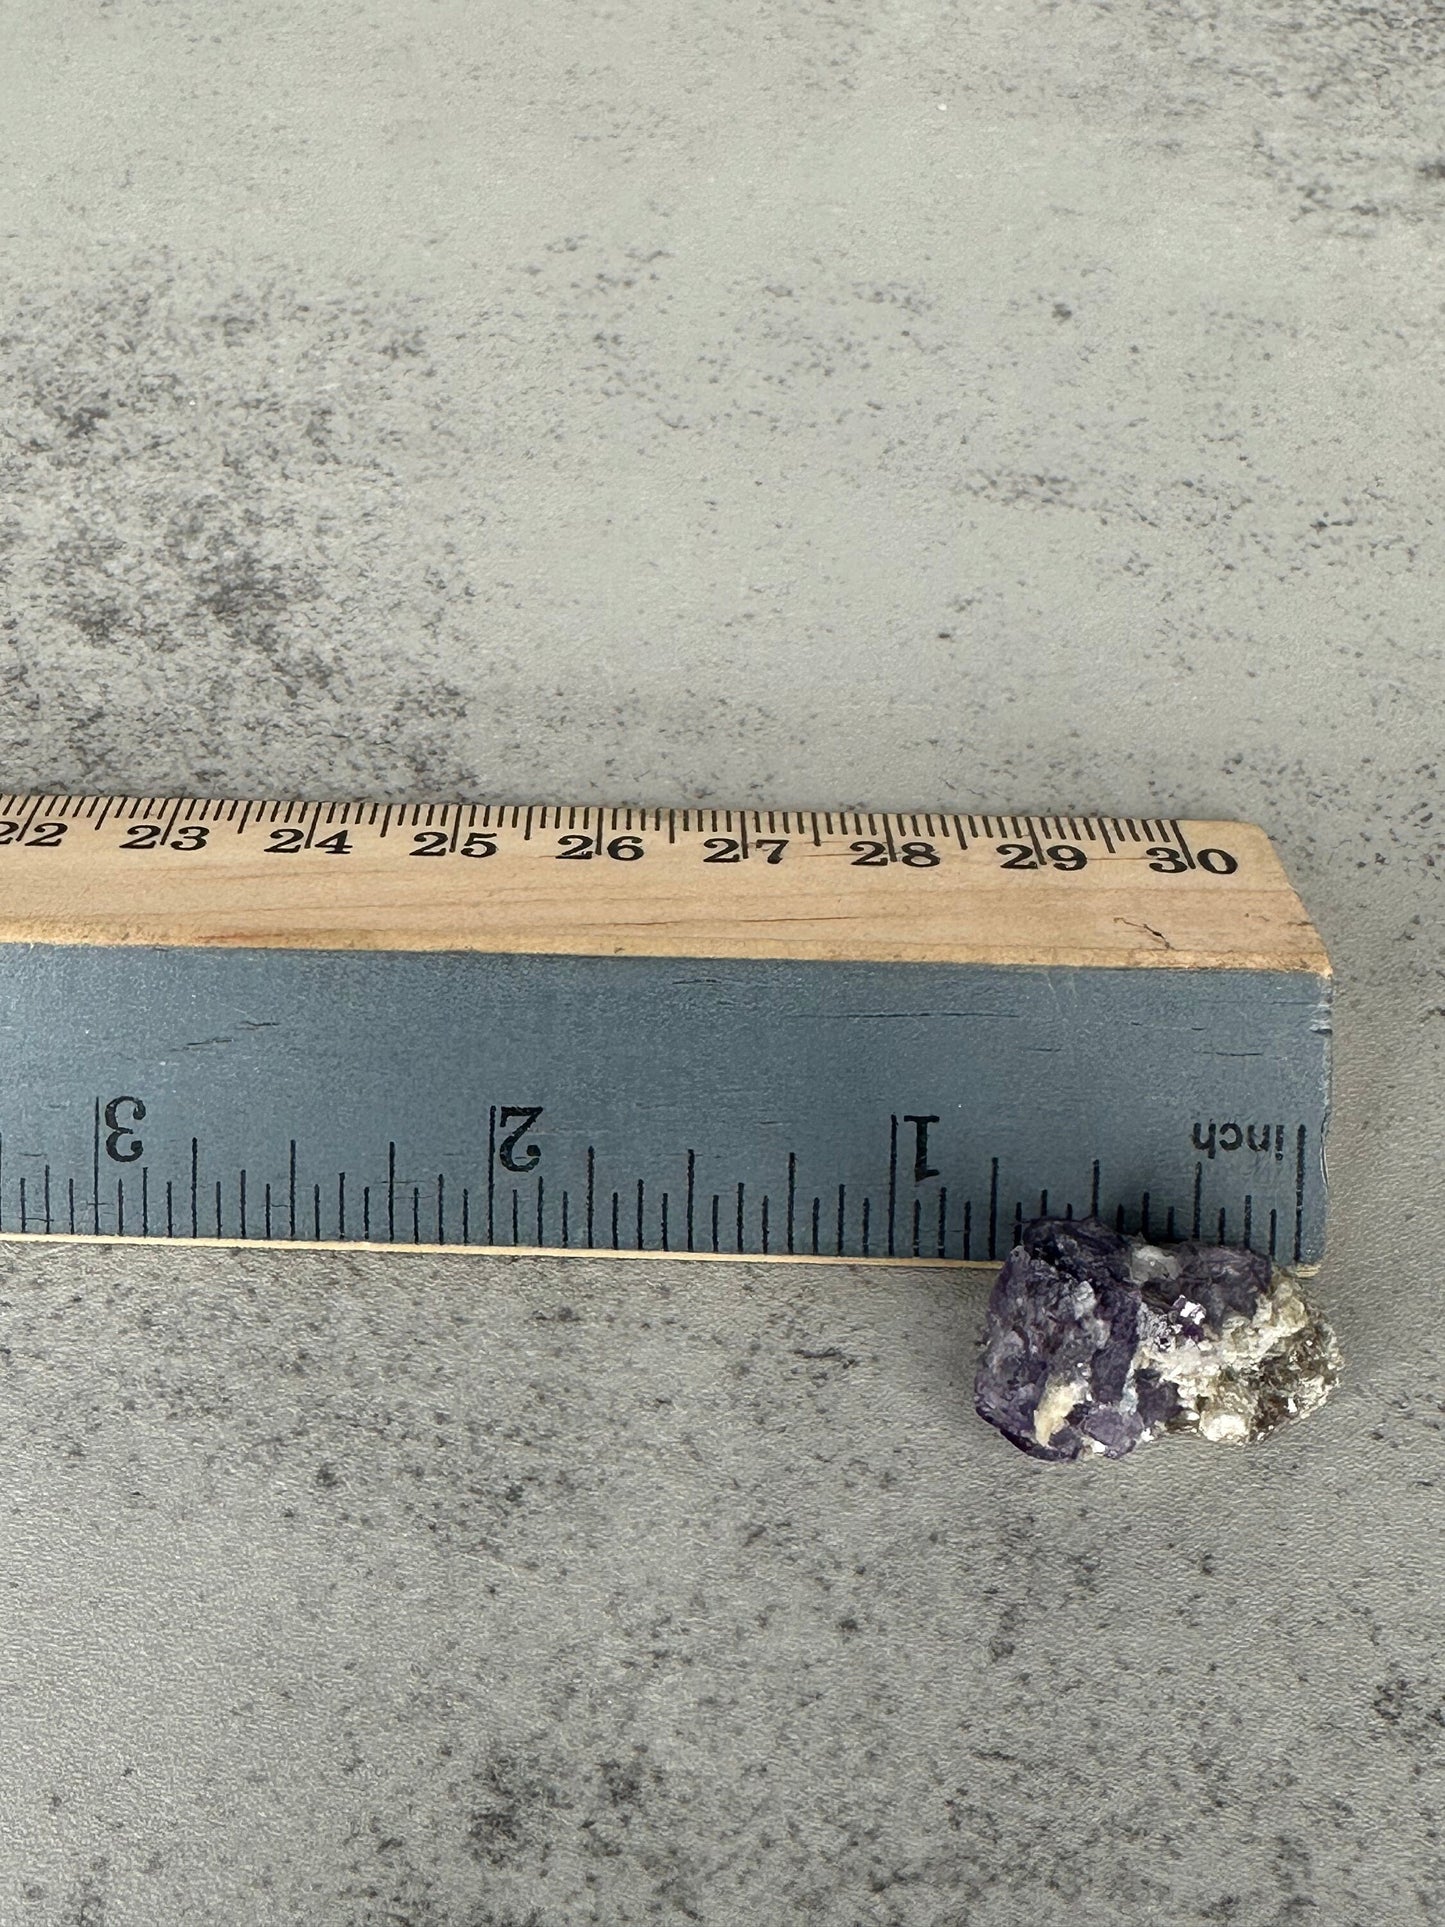 Mini Yaogangxian Purple Fluorite Specimen